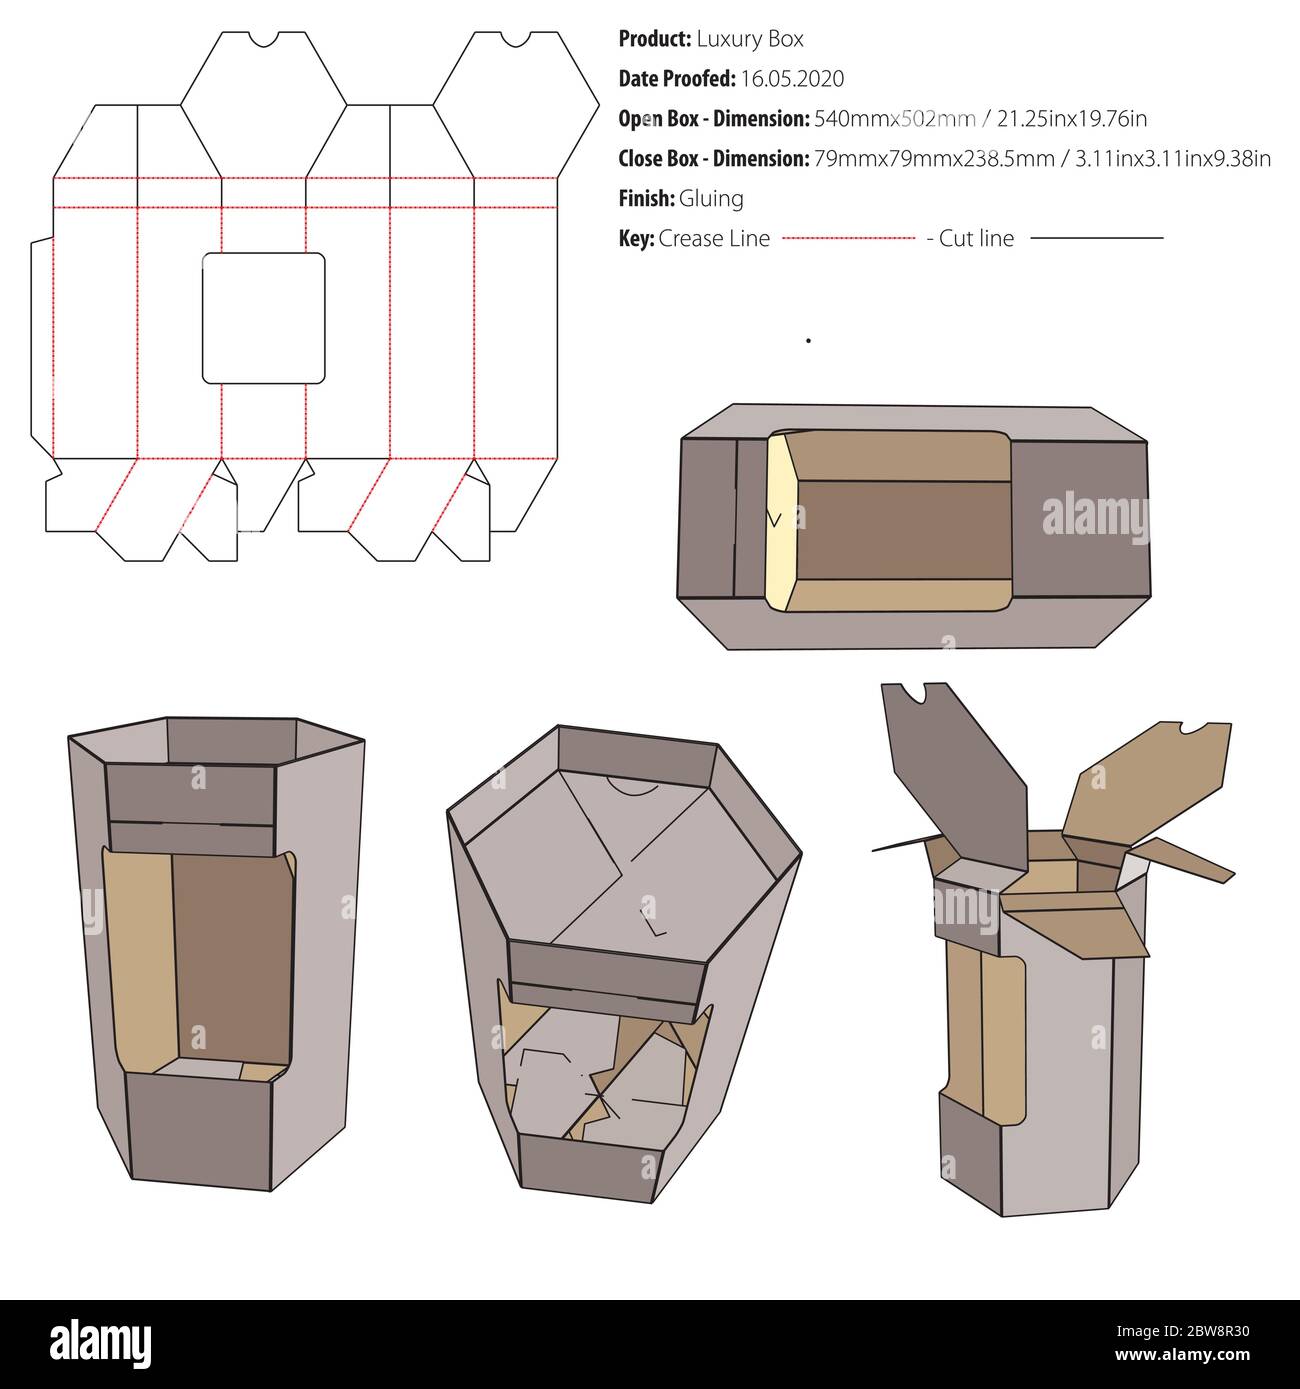 Luxus-Box Verpackung Design Vorlage kleben die geschnitten - Vektor Stock Vektor